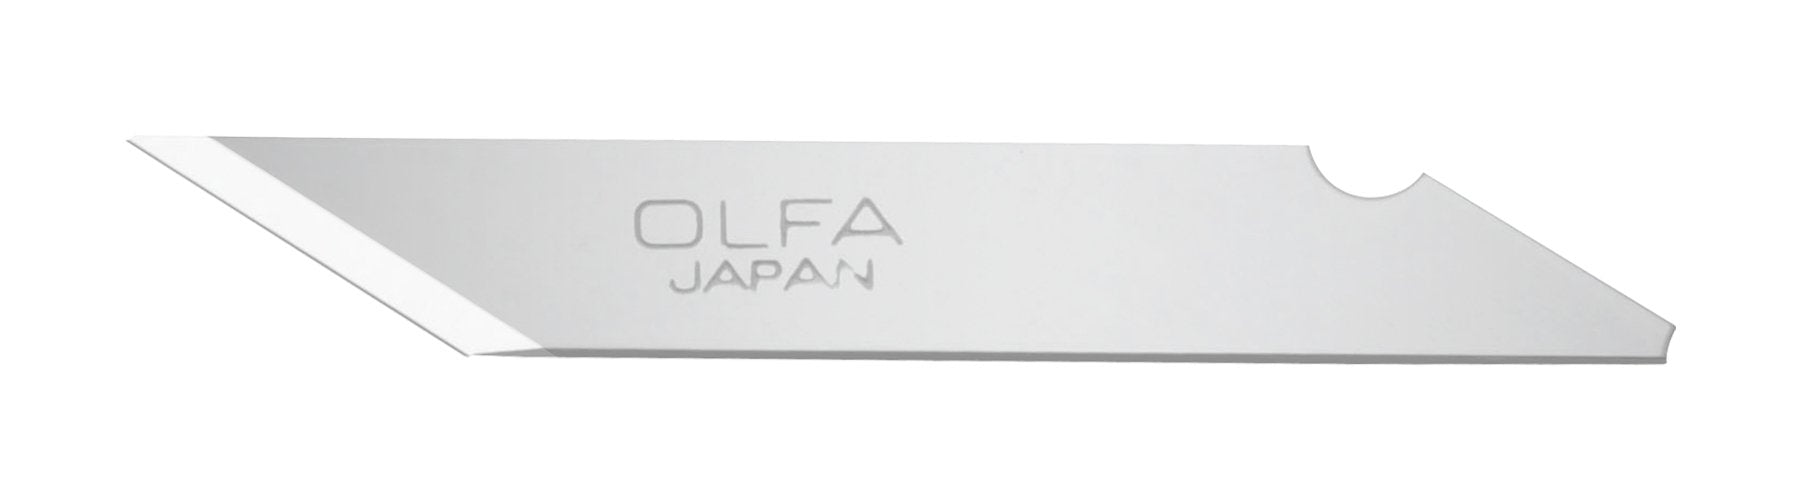 Olfa Art Knife – Mona Lisa Artists' Materials